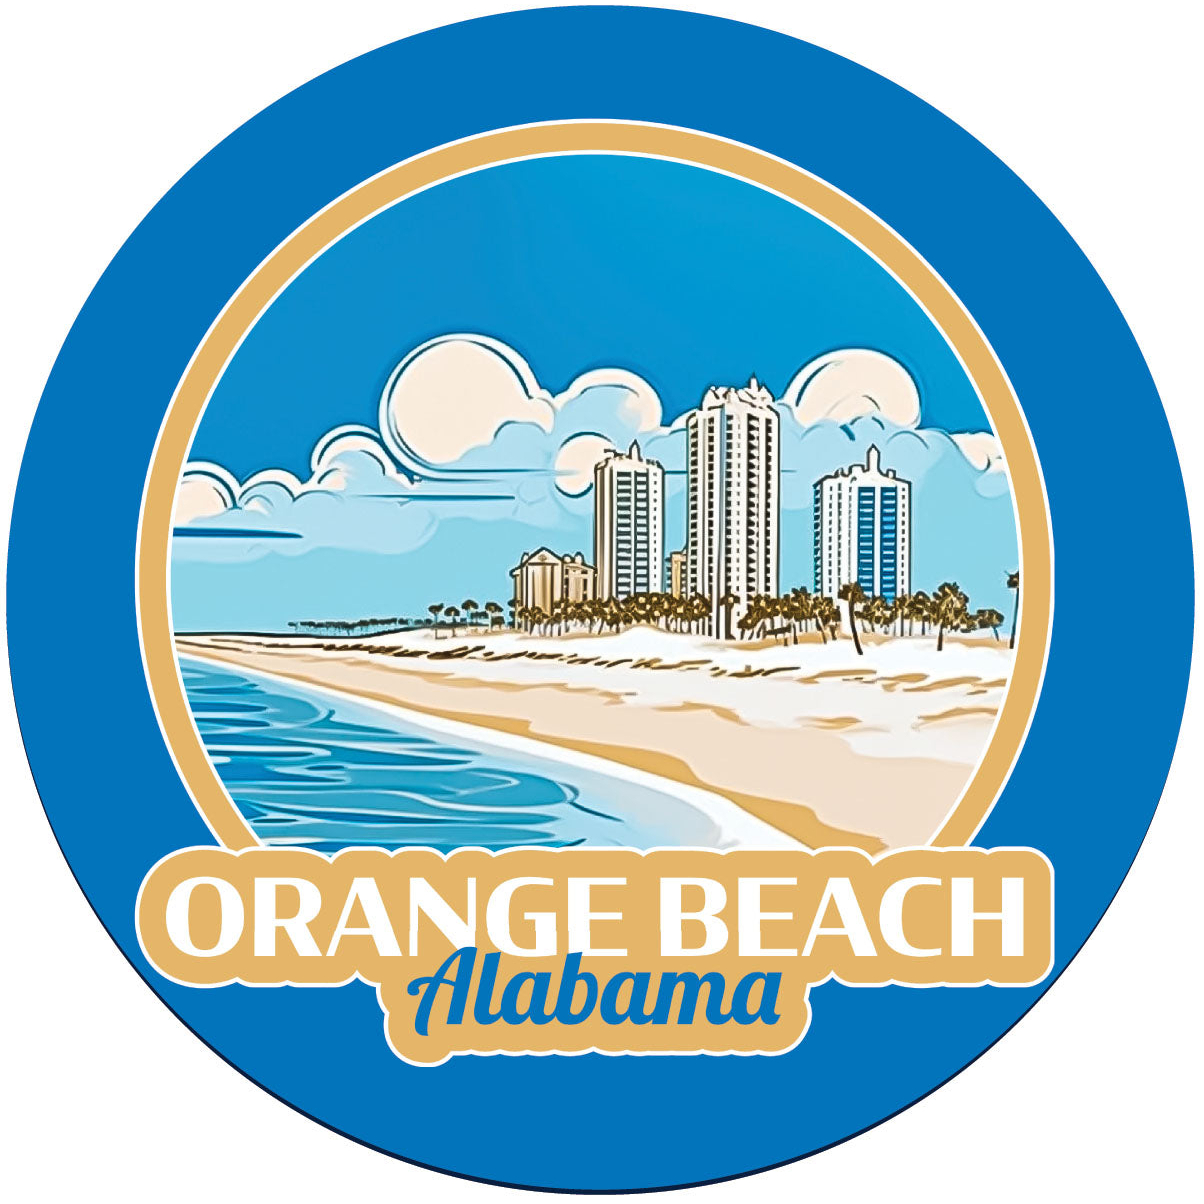 Orange Beach Alabama Design A Souvenir Round Vinyl Decal Sticker - 4-Inch